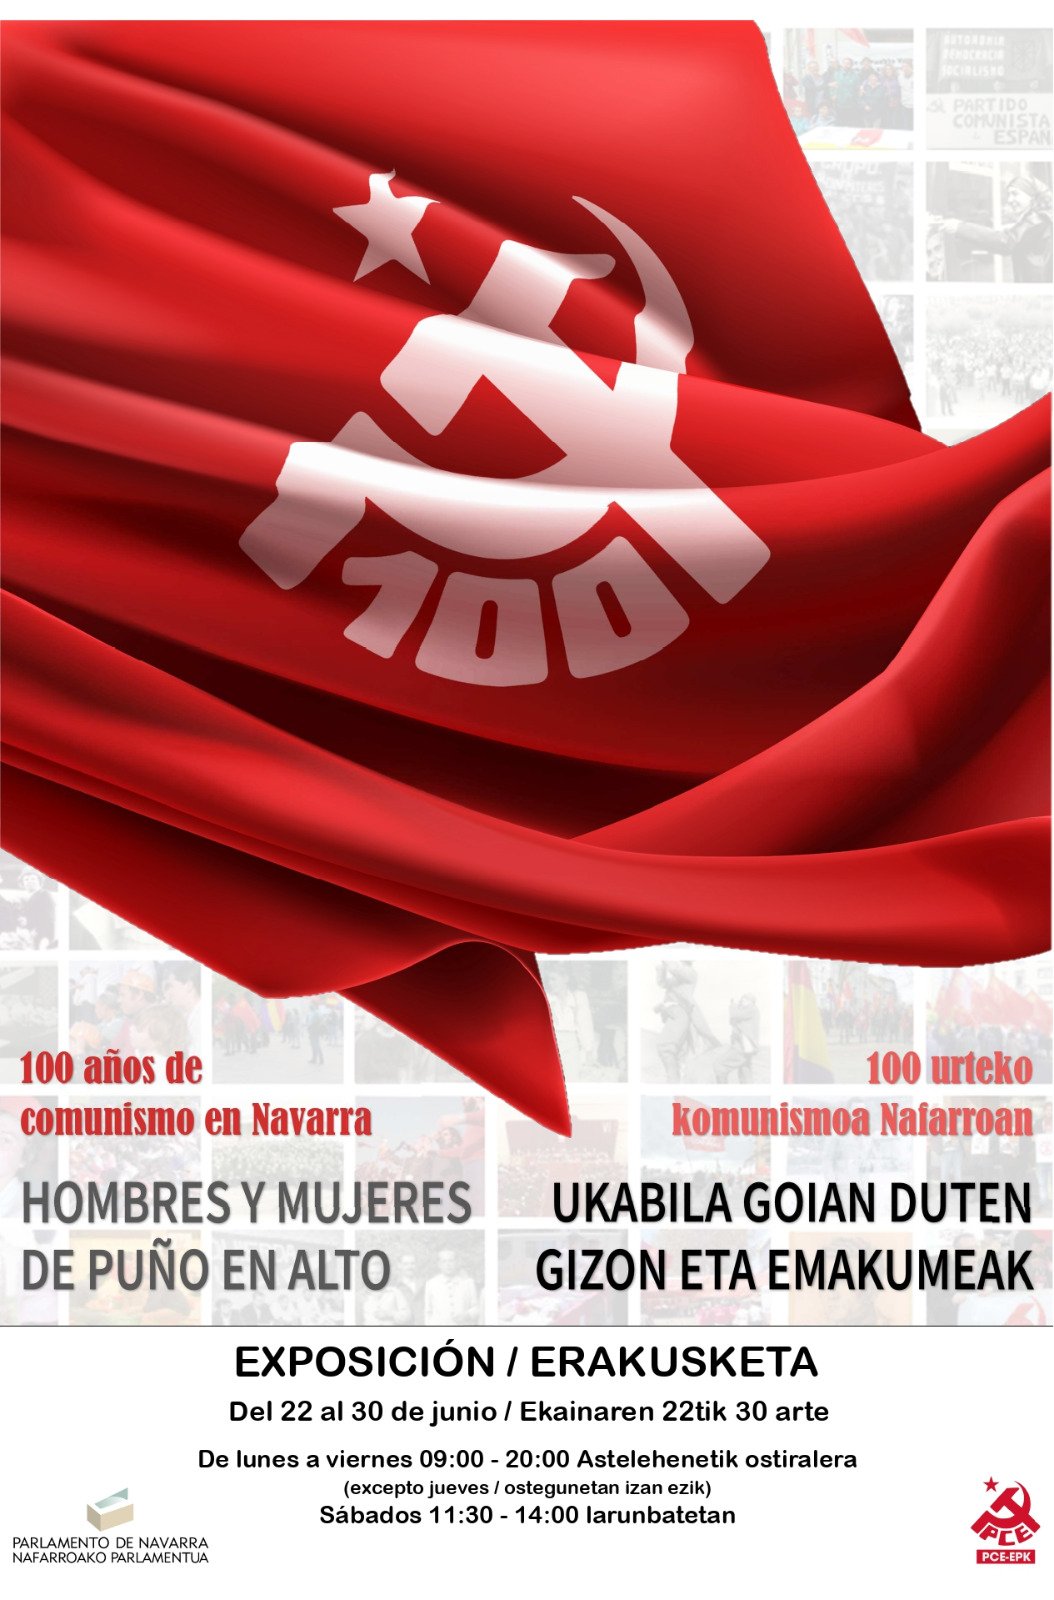 El Civivox Milagrosa de Iruña acoge el mes de noviembre una exposición que resume los 100 años de comunismo en Navarra